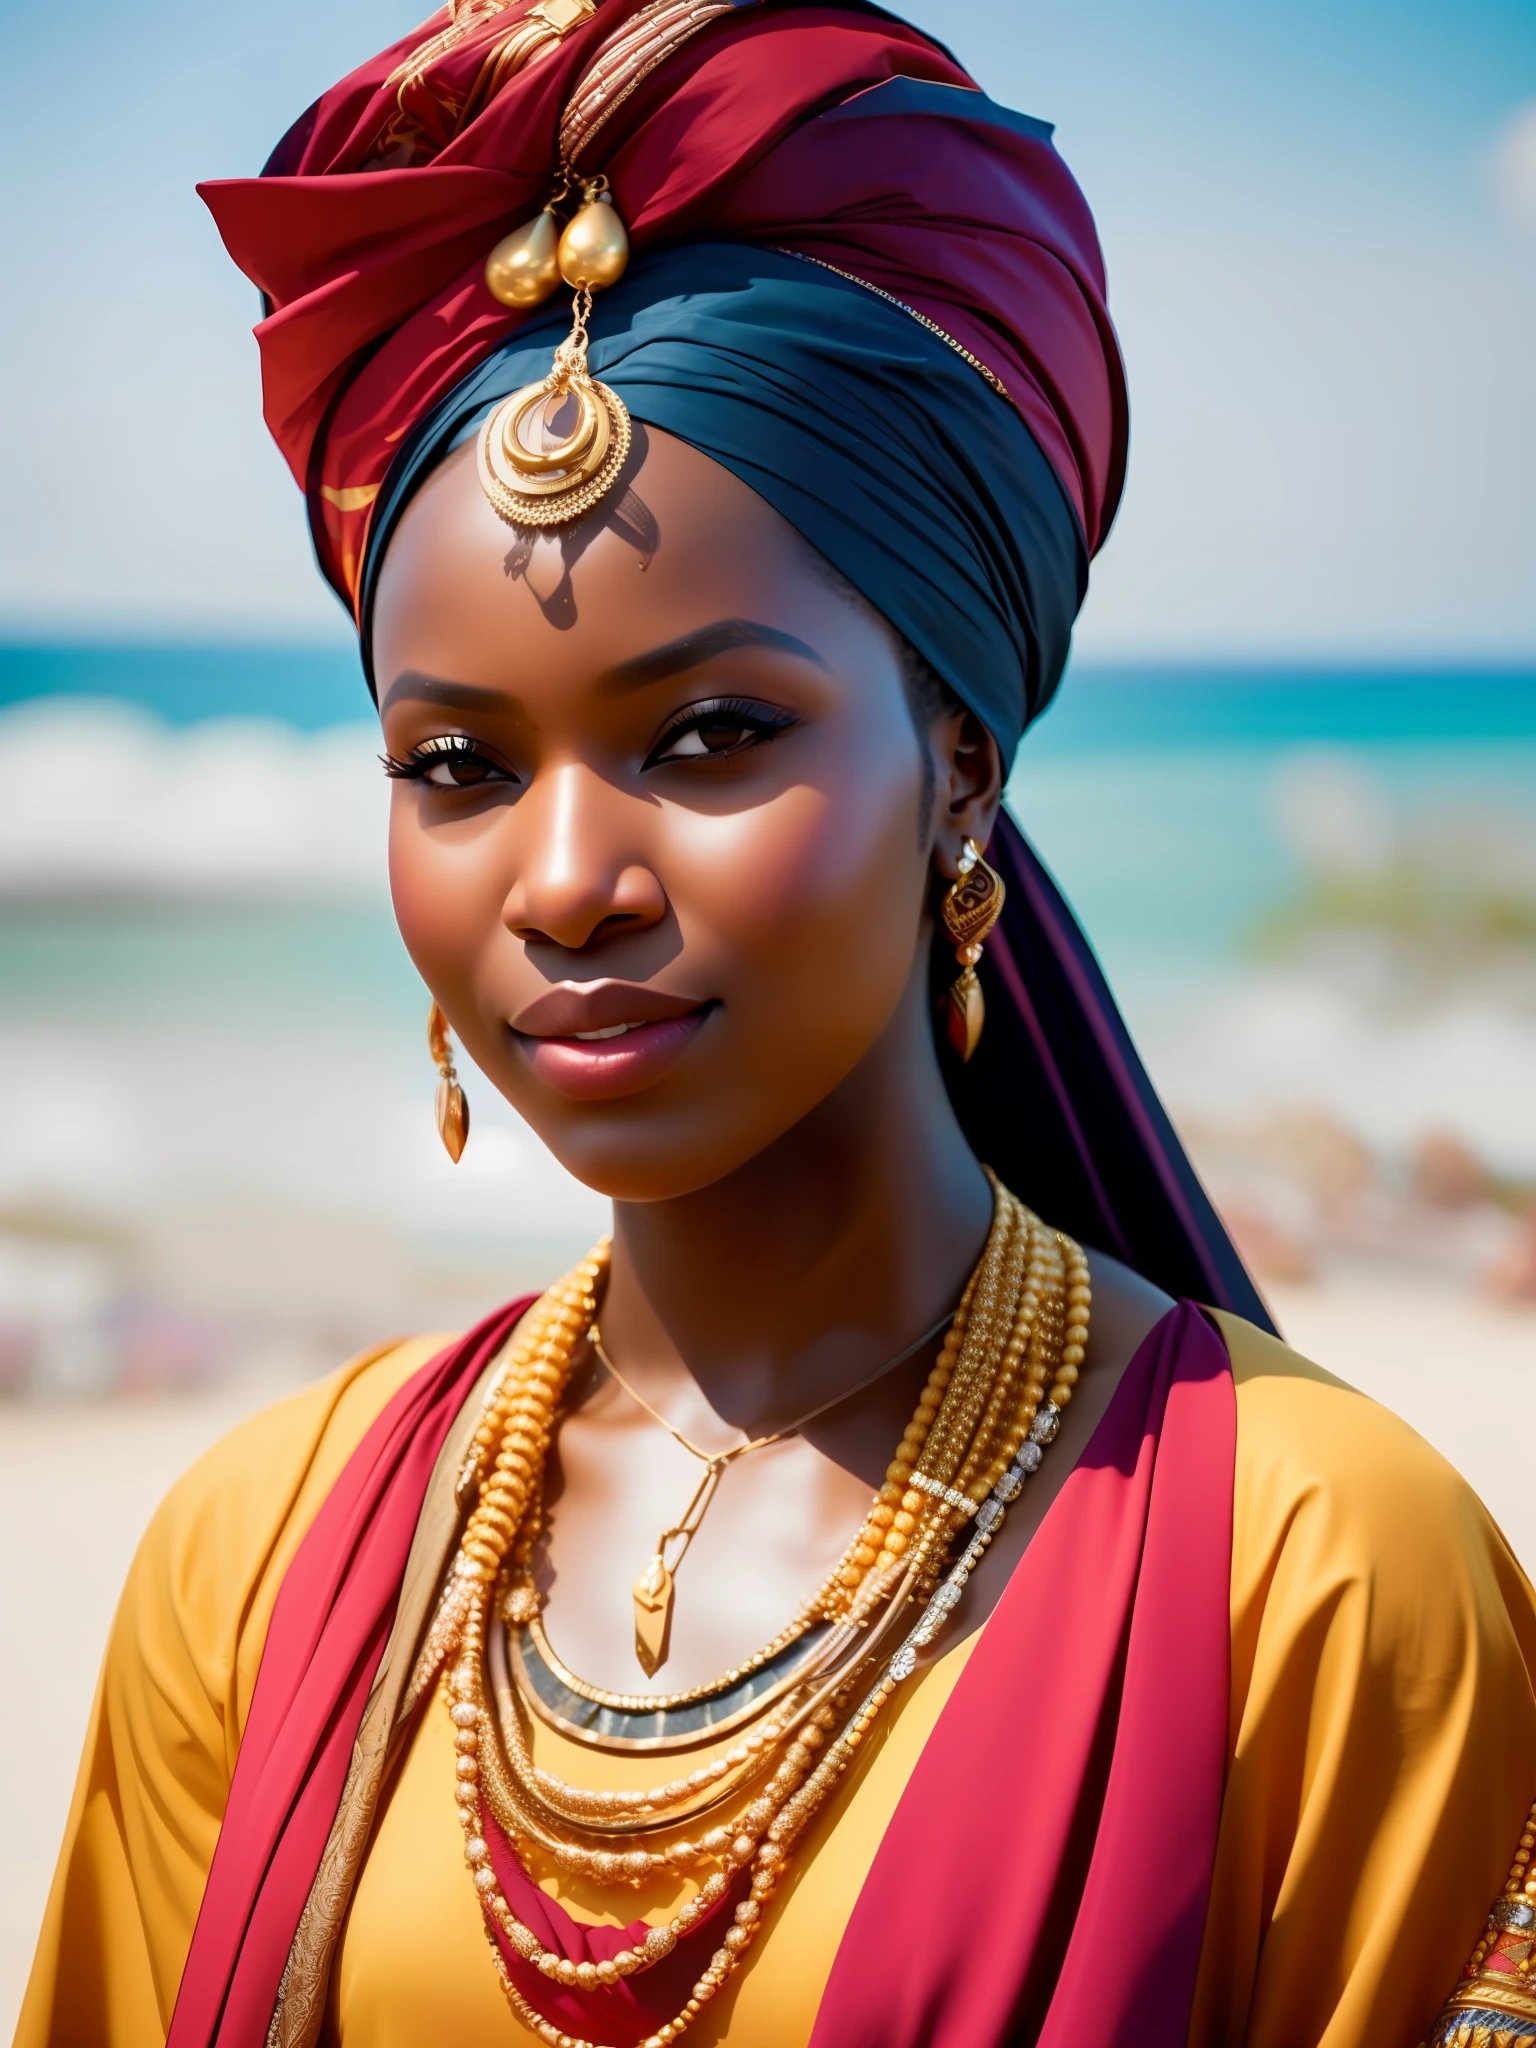 他妈的_科幻, 他妈的_科幻_v2, 一位非常美丽的非洲年轻女性的画像, 在海滩前, 色彩丰富的衣服, 头巾和金色非洲珠宝, 特写, 帝王姿态. 他妈的_电影_v2. 他妈的_电影_v2